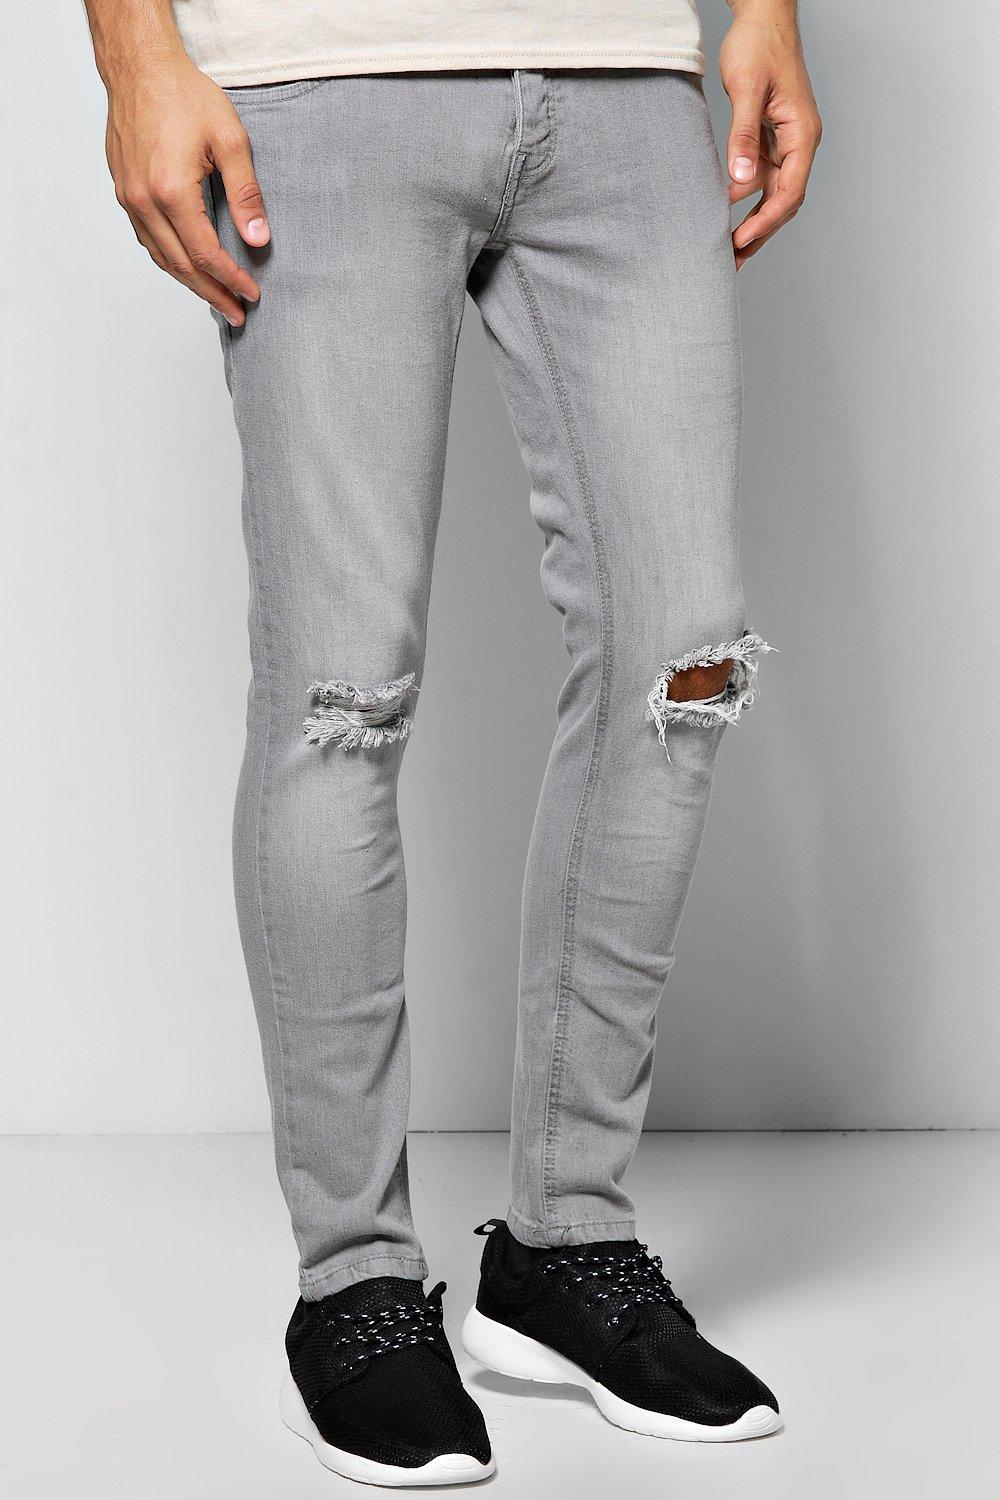 boohoo grey jeans